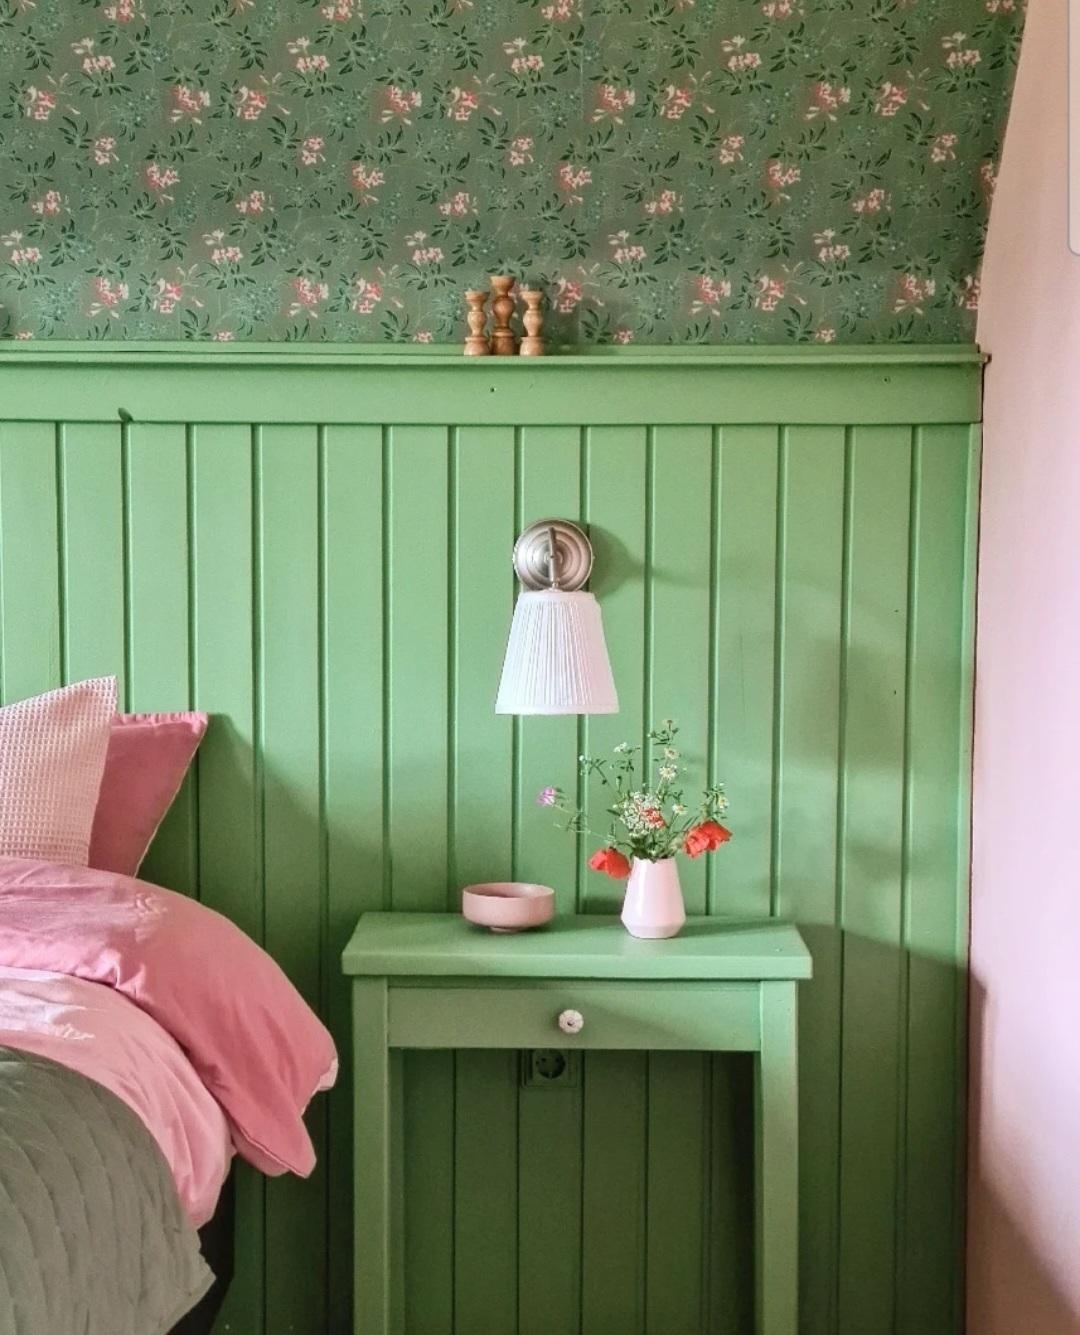 Schlafzimmermakeover
#schlafzimmer #diy #tapete #skandi #eclectic #farbenfroh #Grün #Rosa